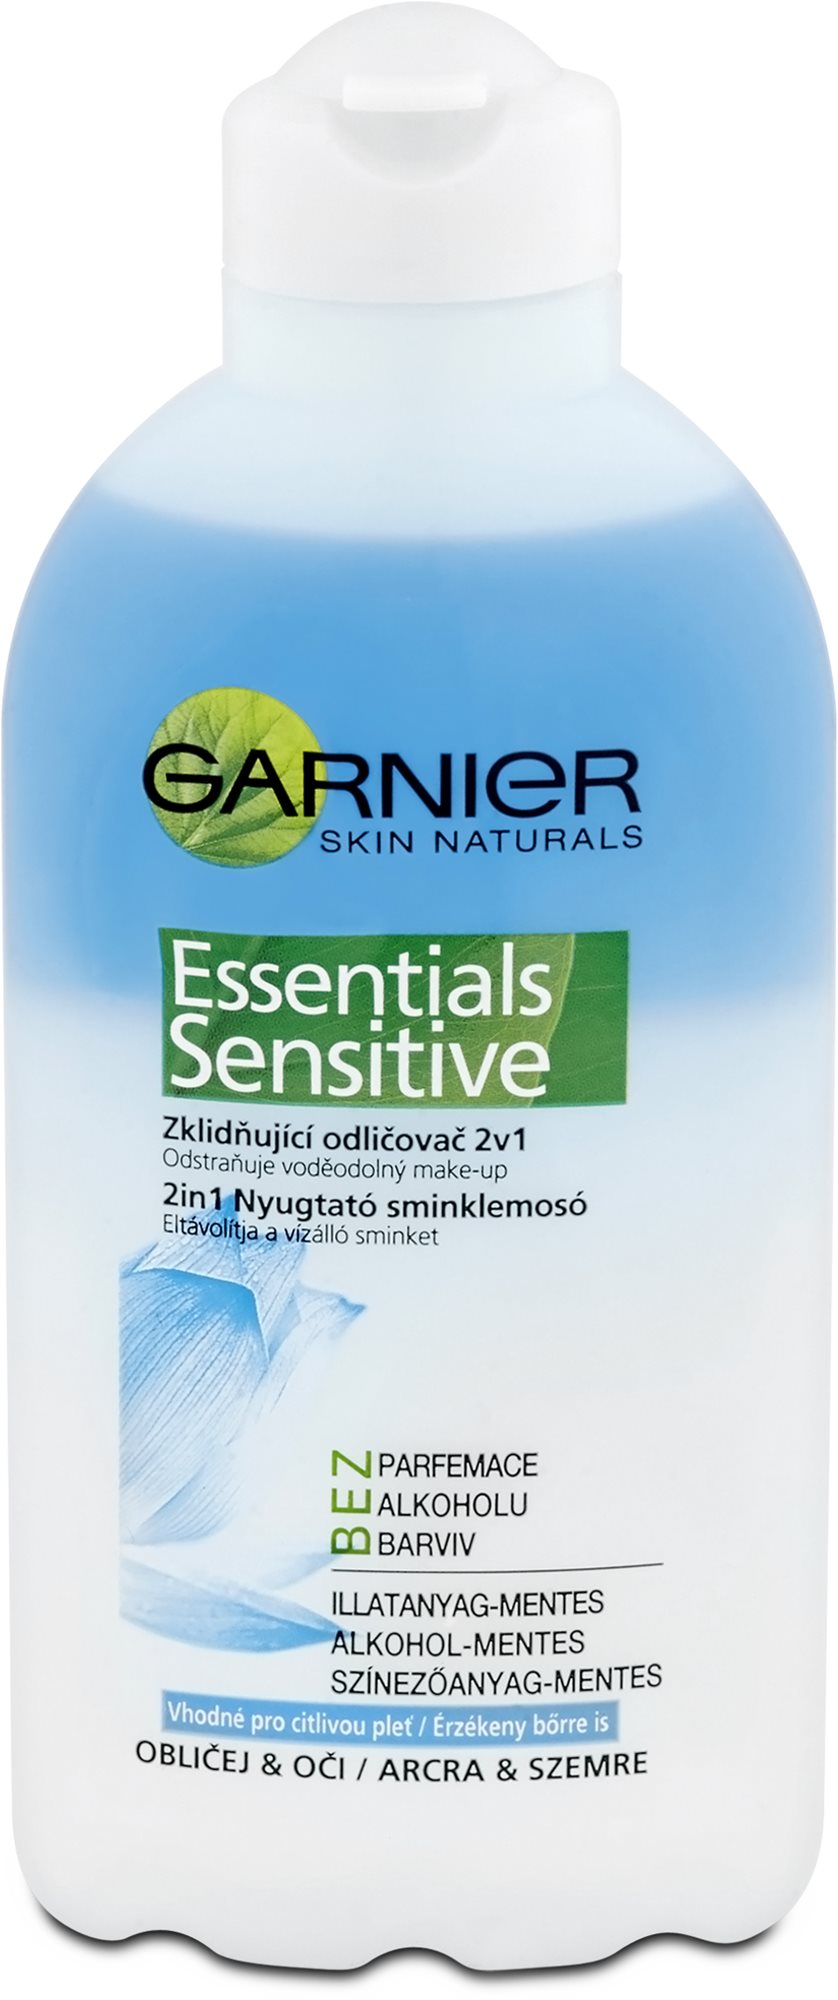 GARNIER Skin Naturals Essentials Sensitive 200 ml